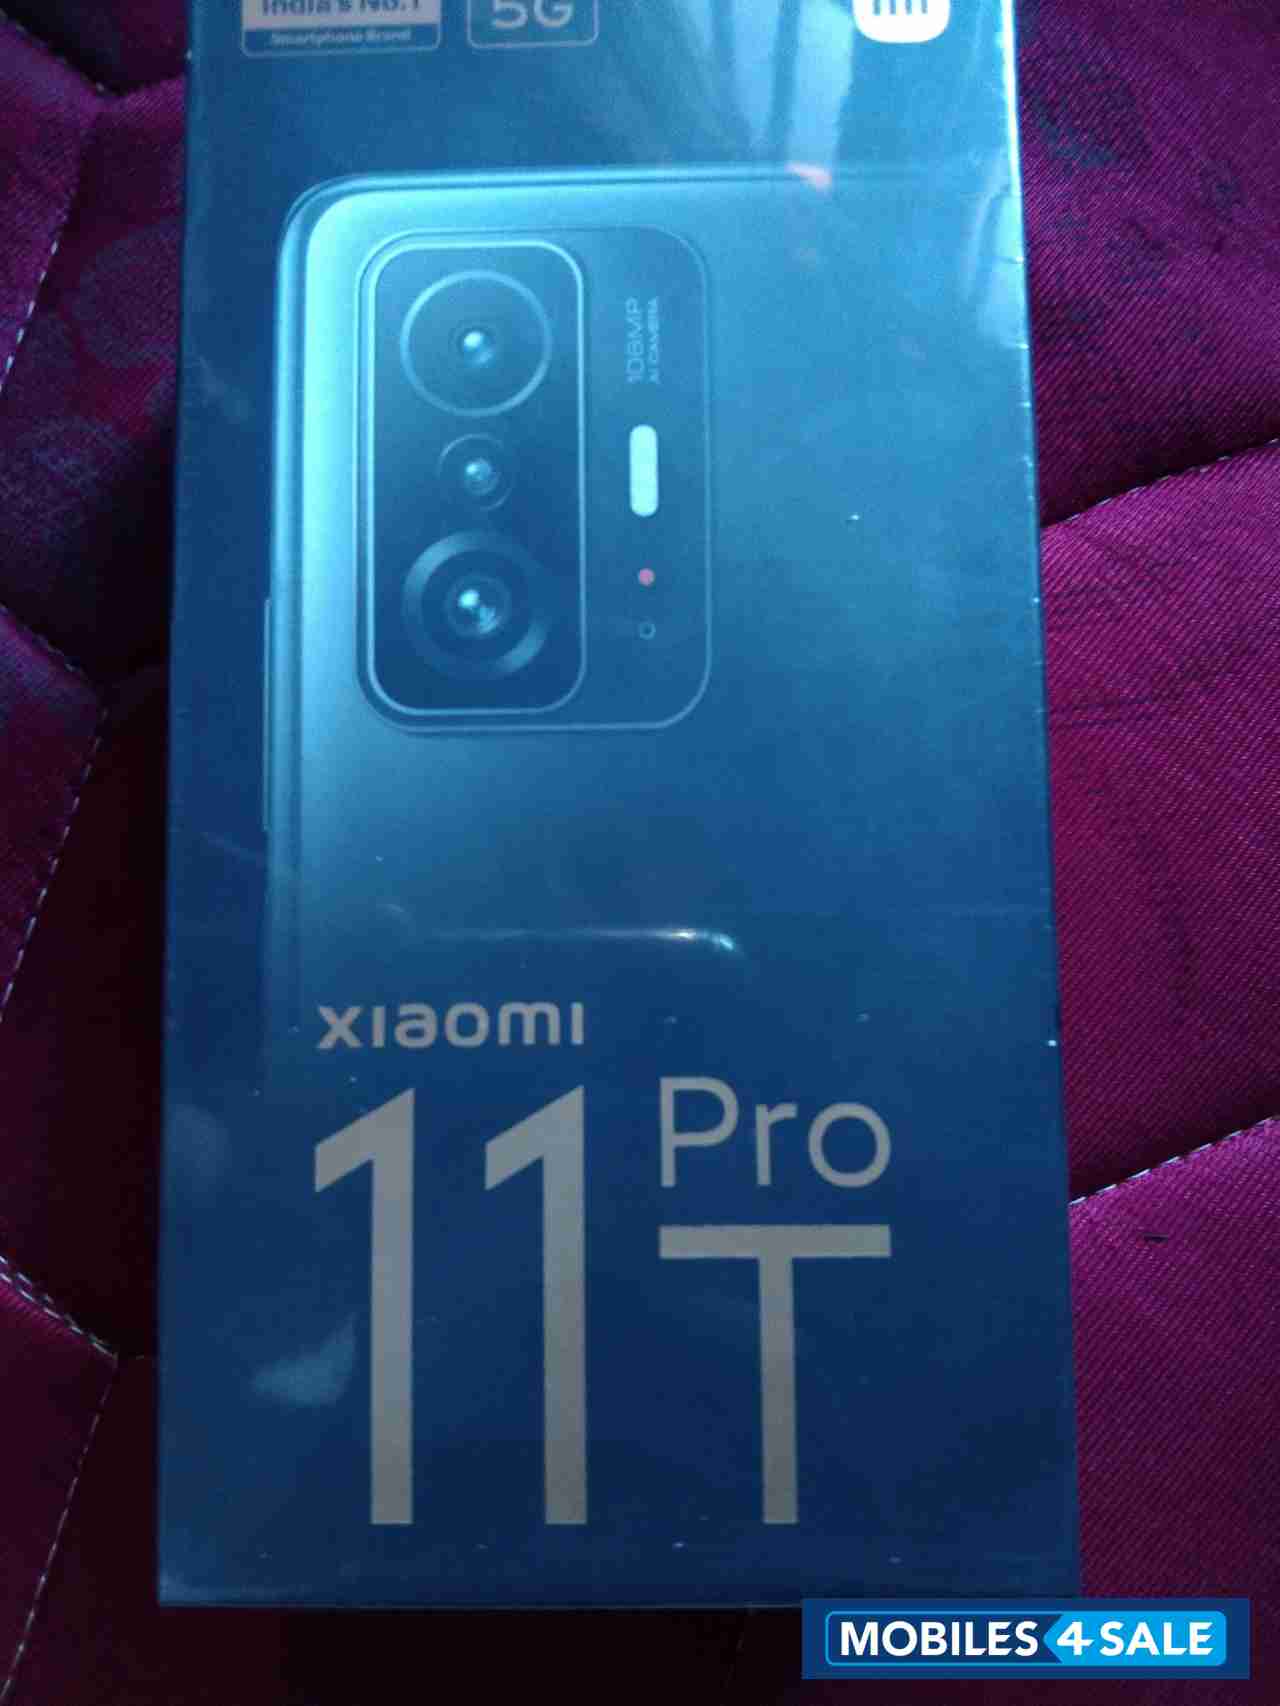 Xiaomi  11T pro 5G